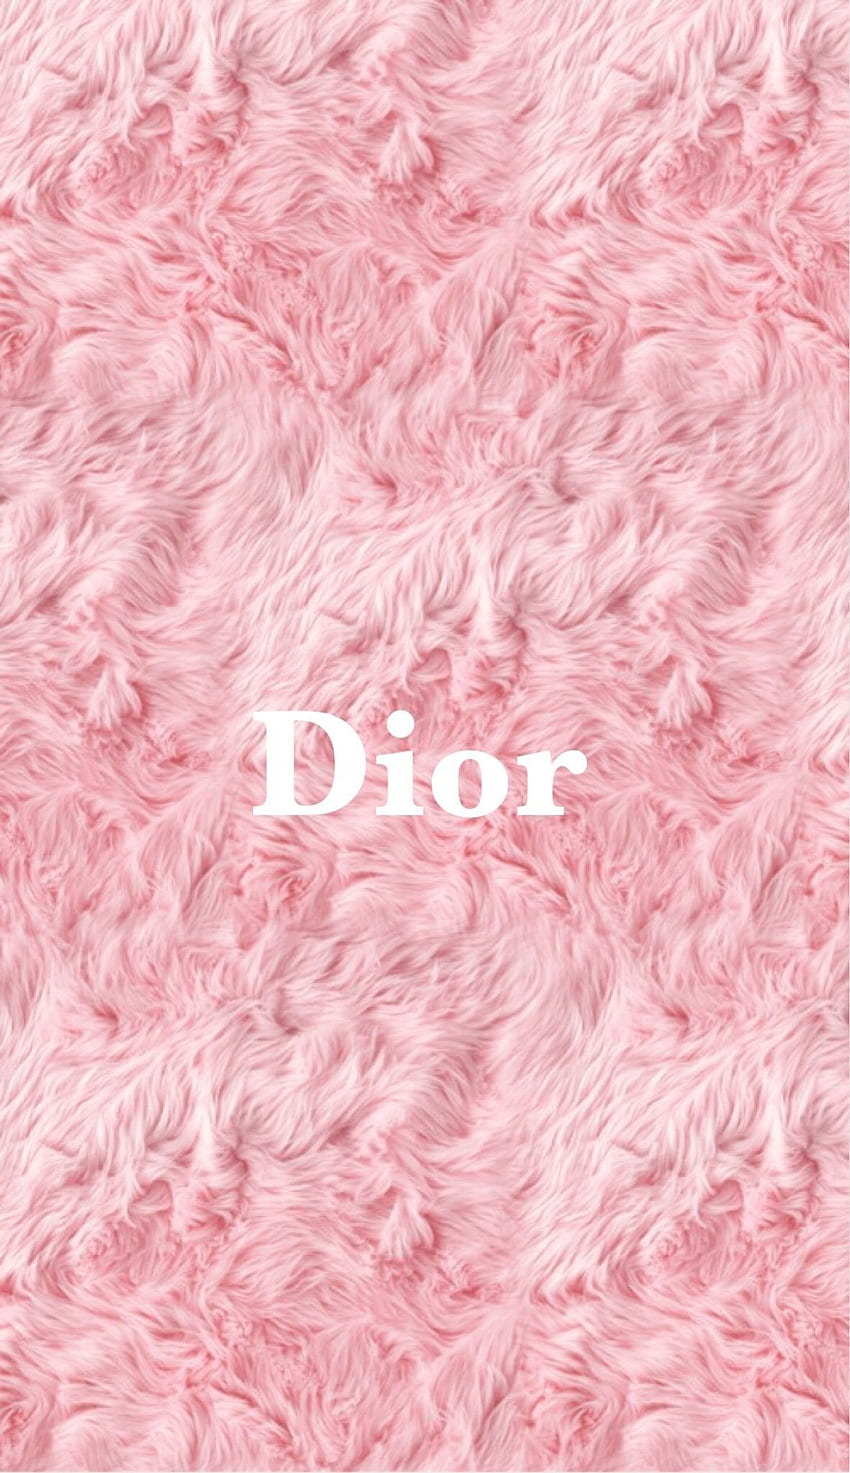 Bulu Ungu, Dior Merah Muda wallpaper ponsel HD